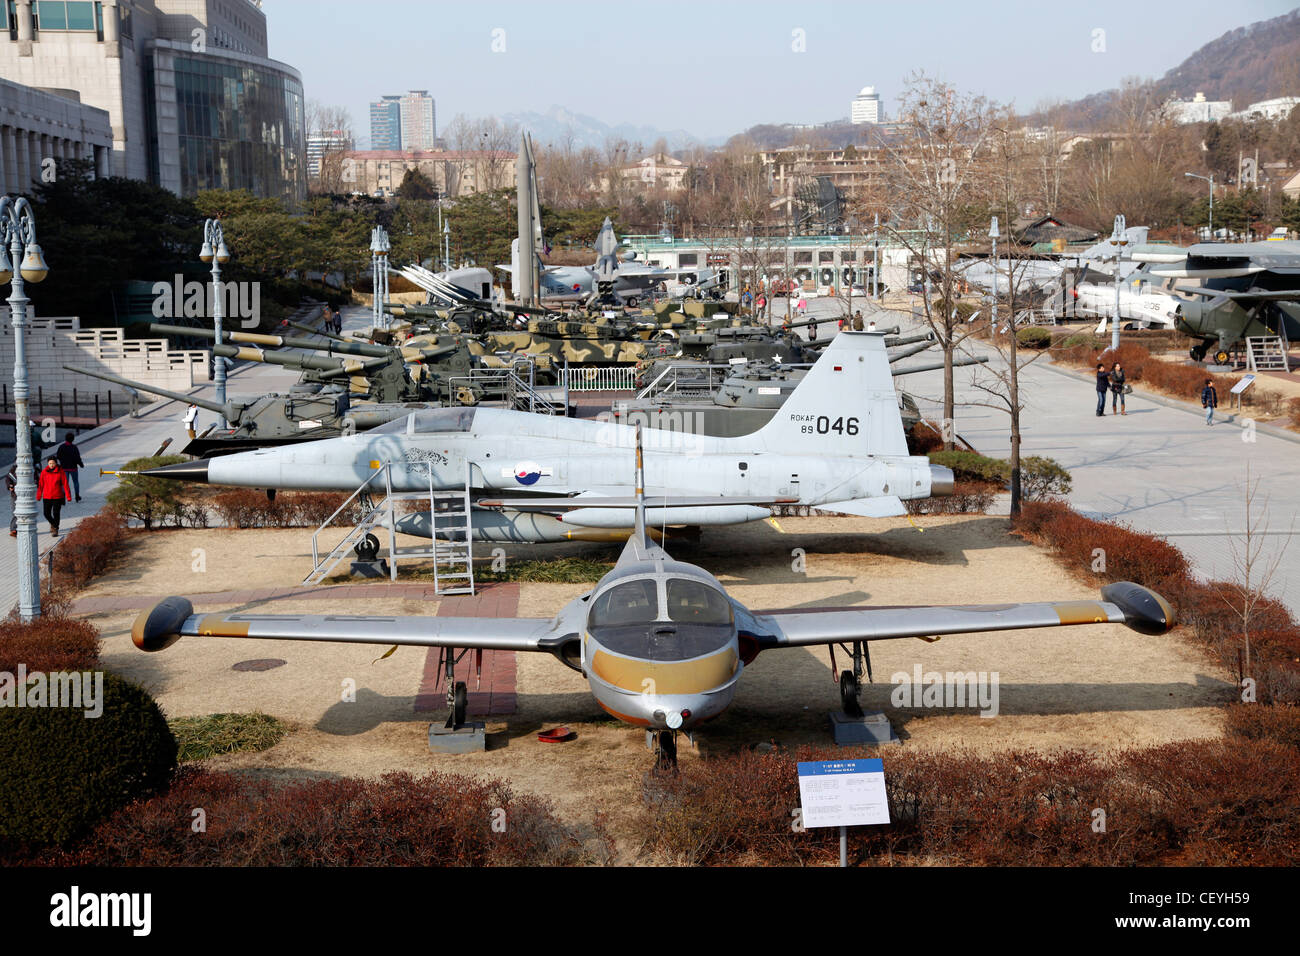 The War Memorial of Korea remembering the Korean War in Seoul, South Korea Stock Photo